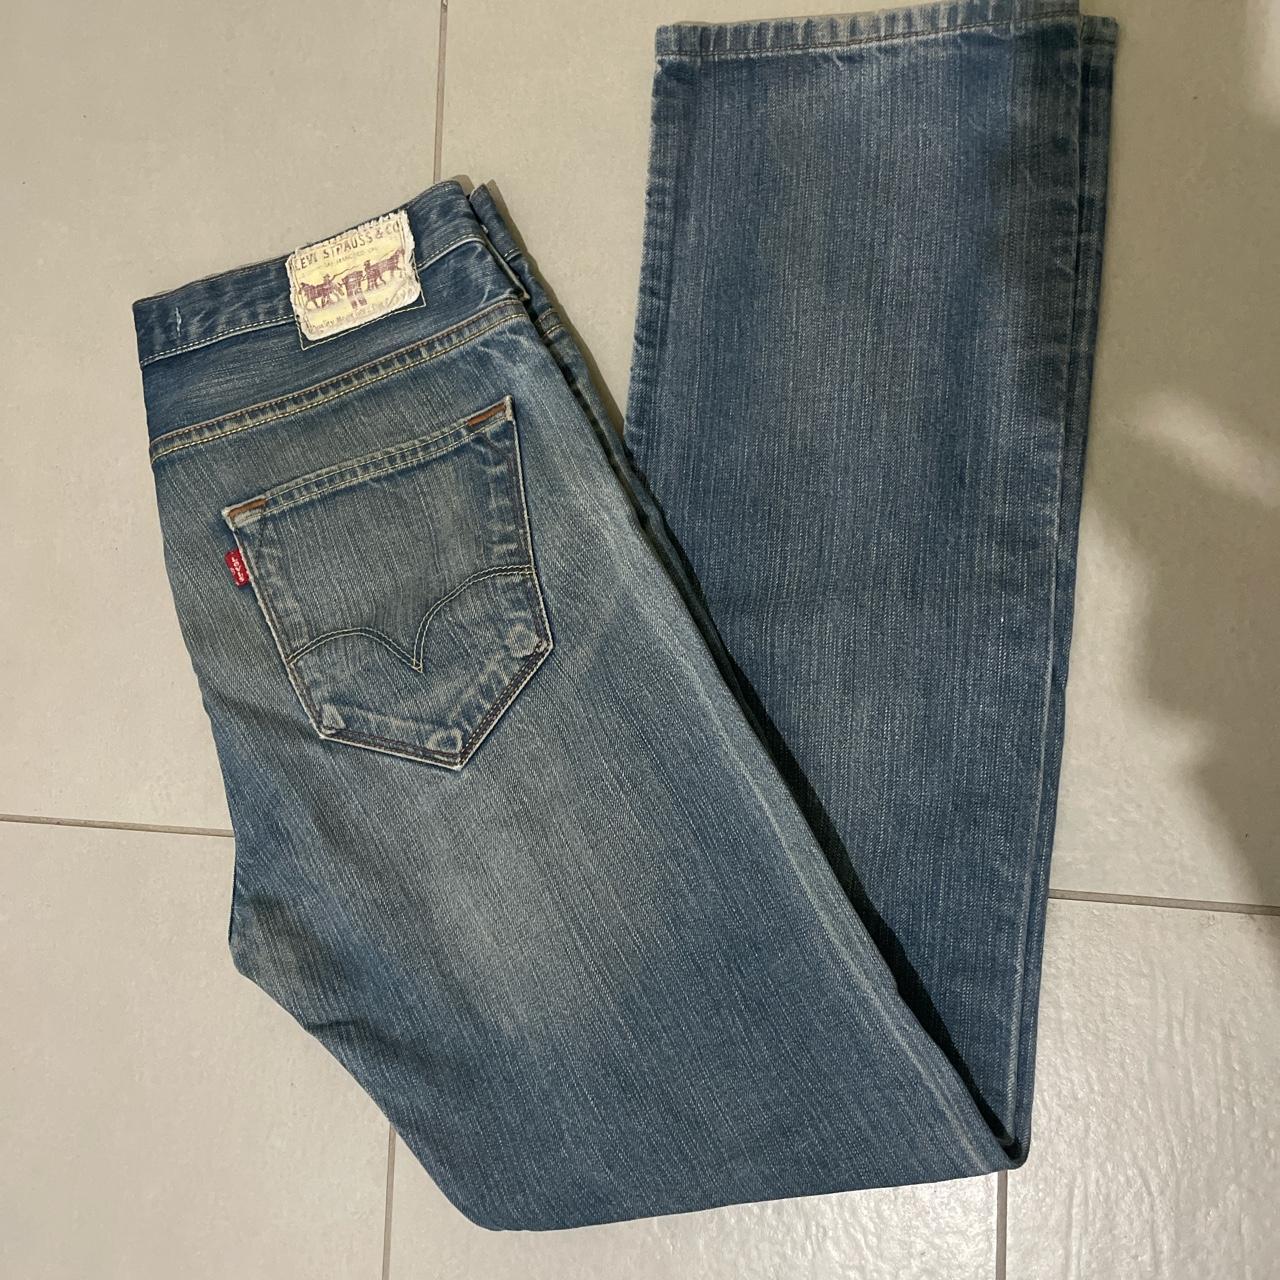 Jeans levis 504 straight #jeans #levis #vintage #504 - Depop